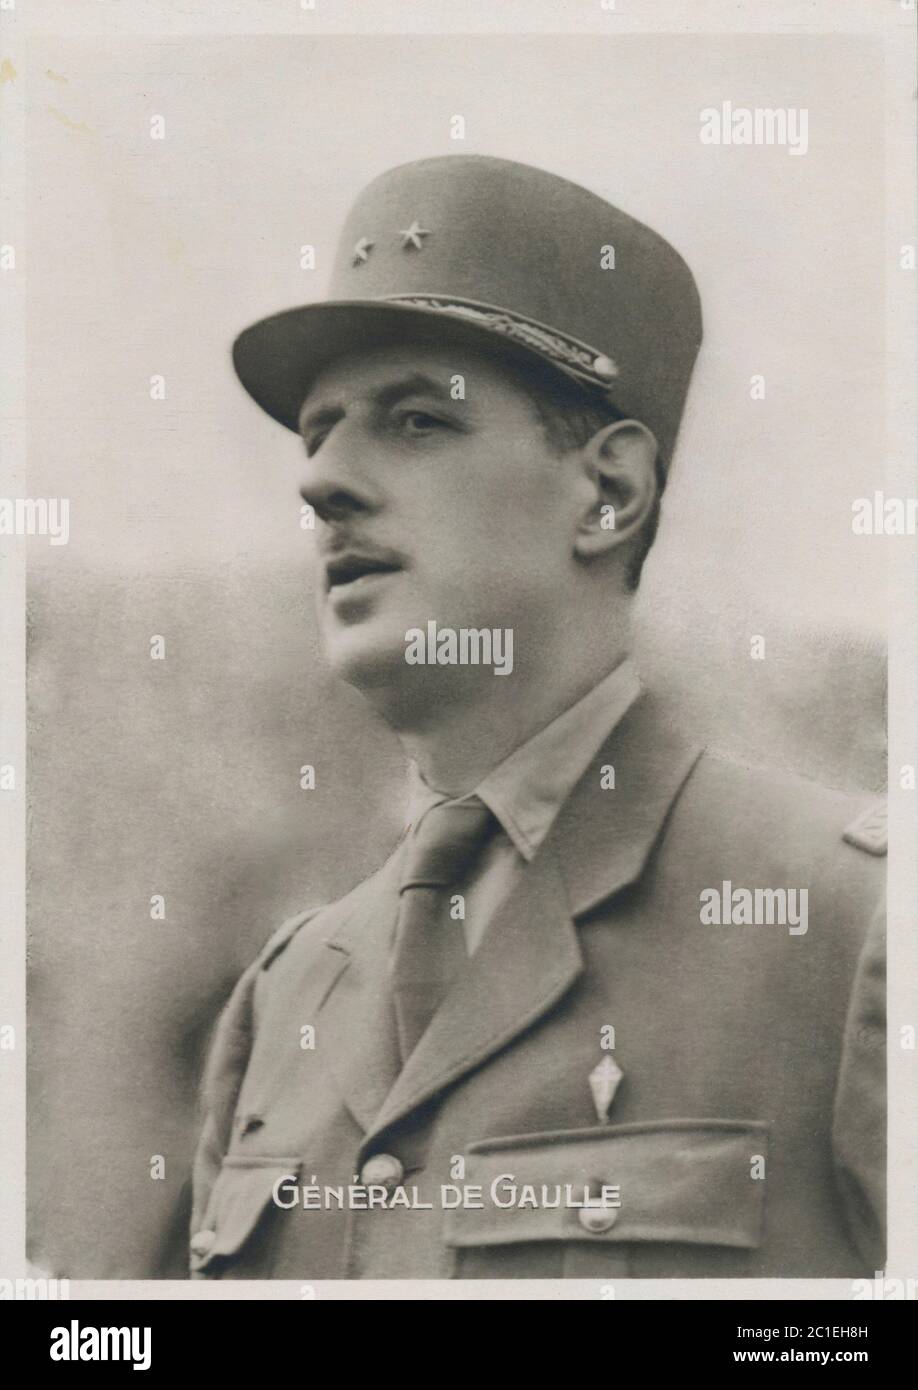 Retro-Foto von General Charles de Gaulle (1890 – 1970) war ein französischer Offizier und Staatsmann, der den französischen Widerstand gegen Nazi-Deutschland in W führte Stockfoto